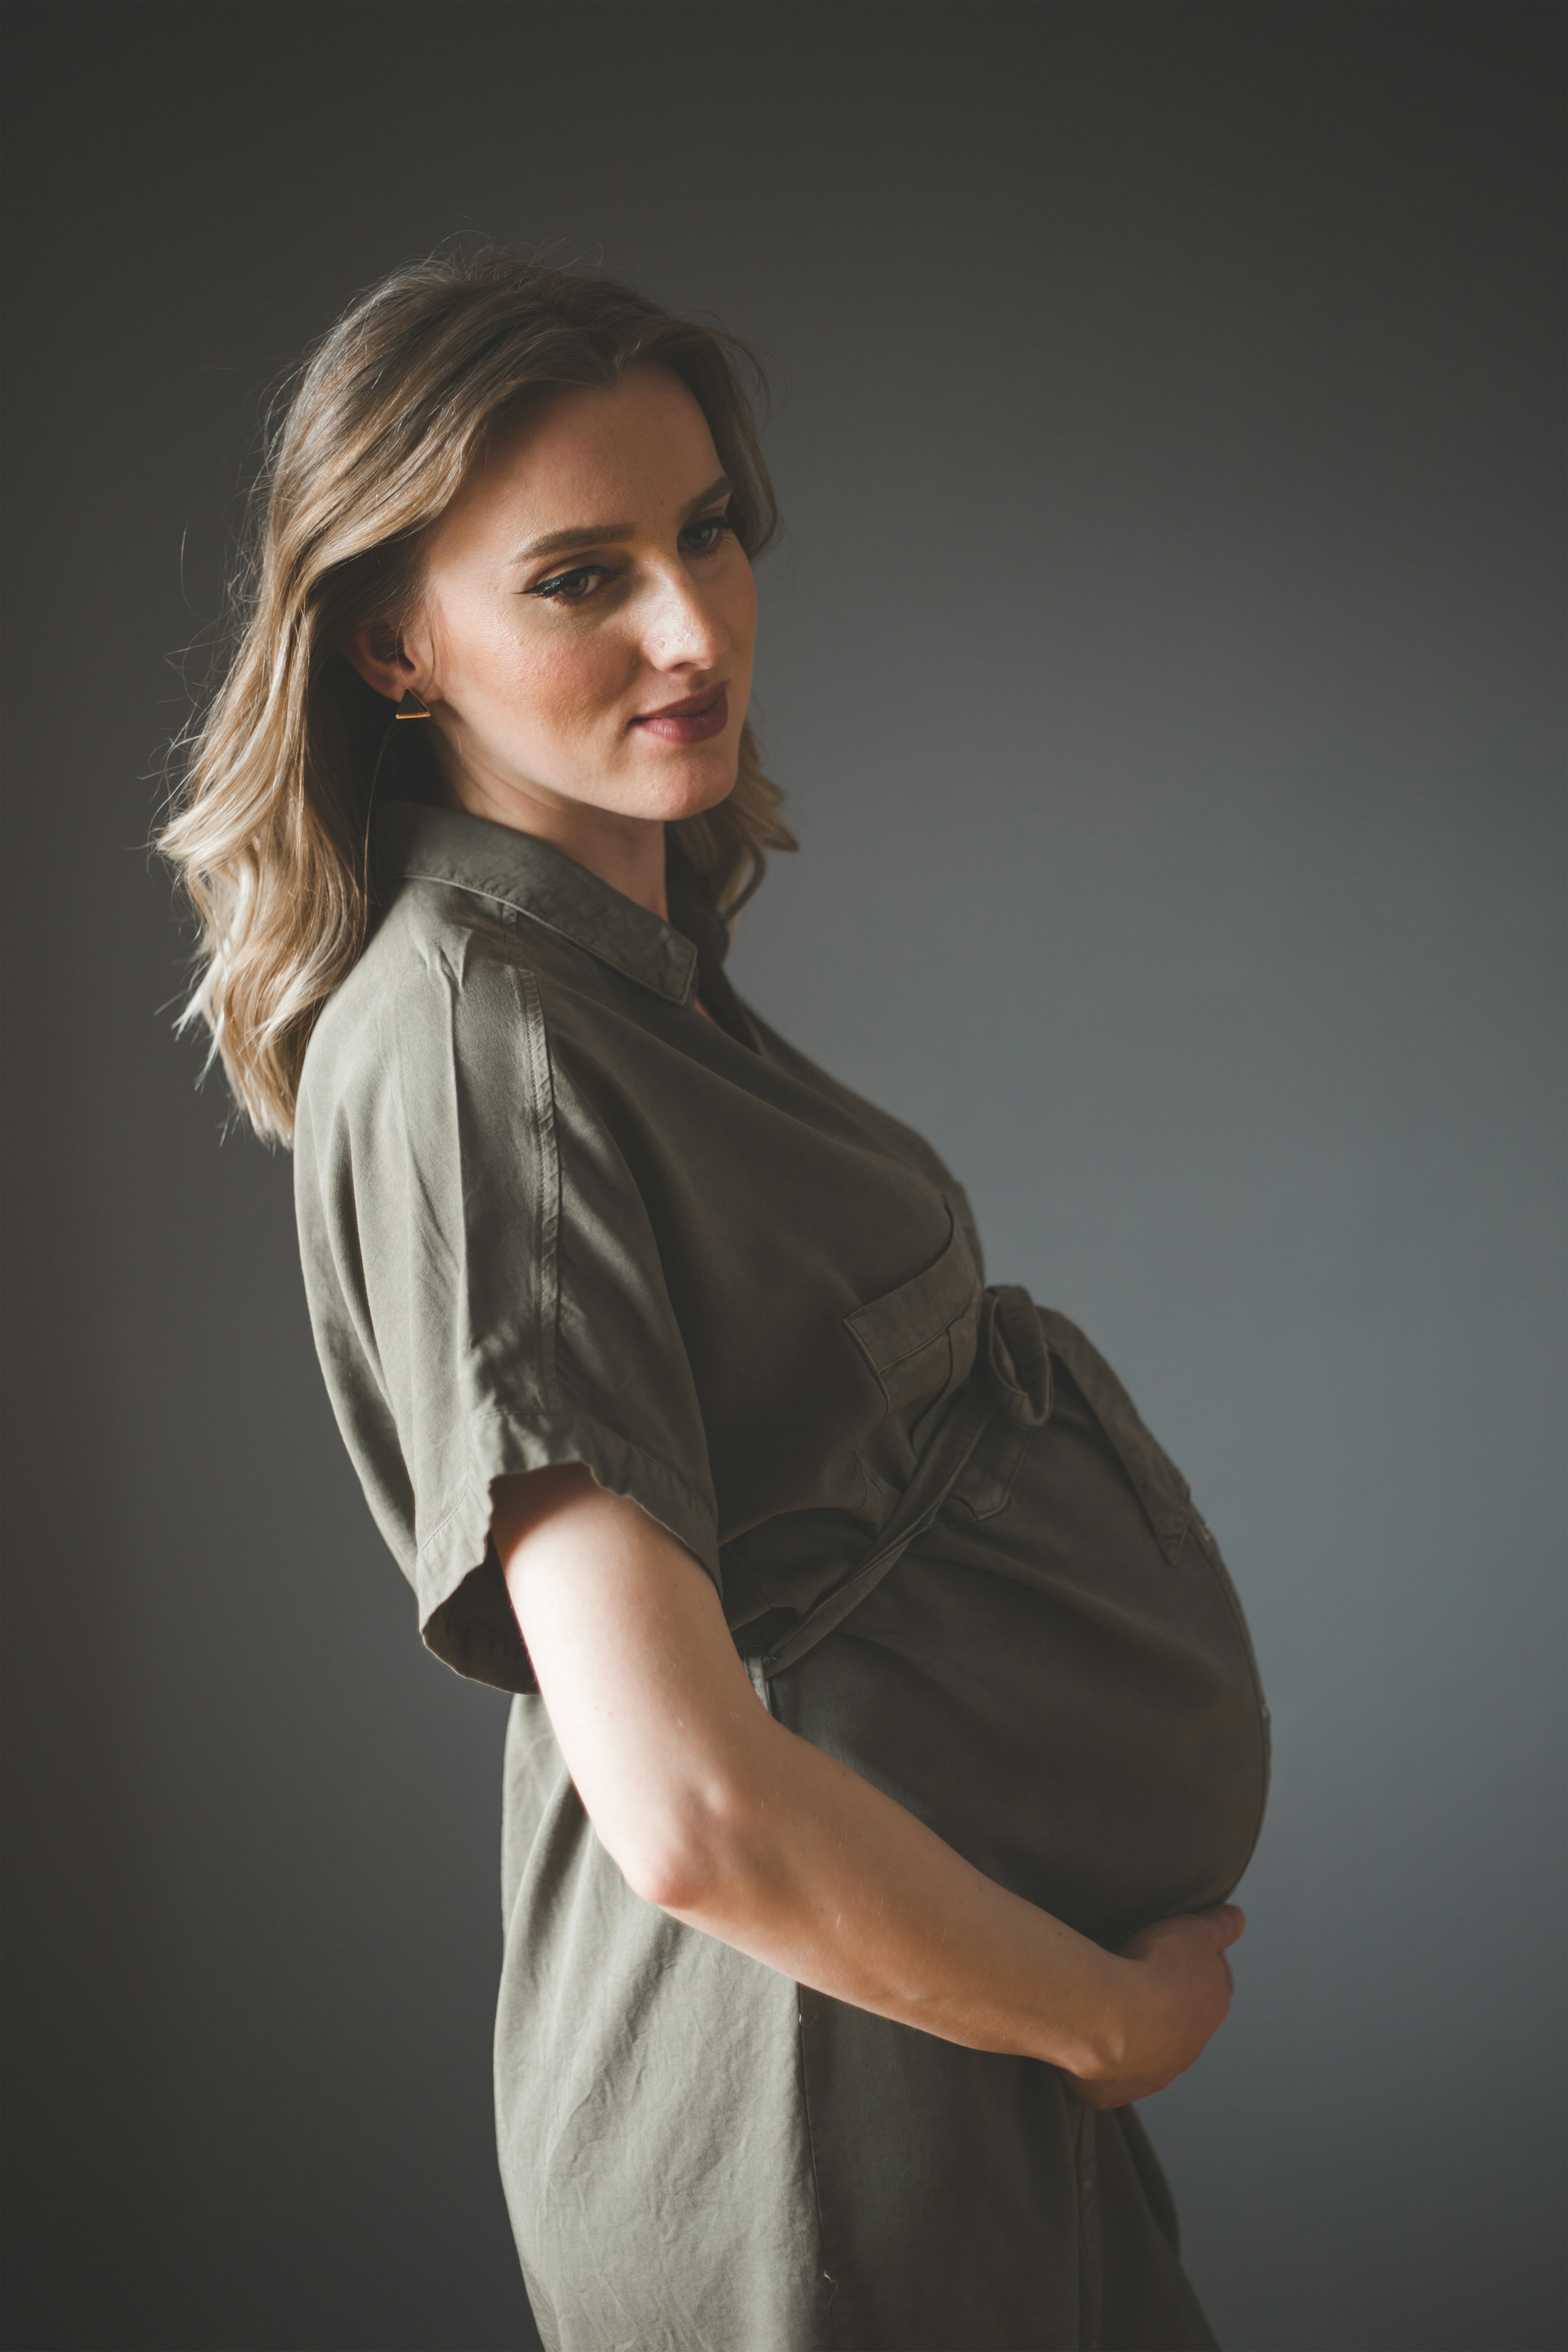 Una mujer embarazada sujetándose el vientre | Fuente: Unsplash